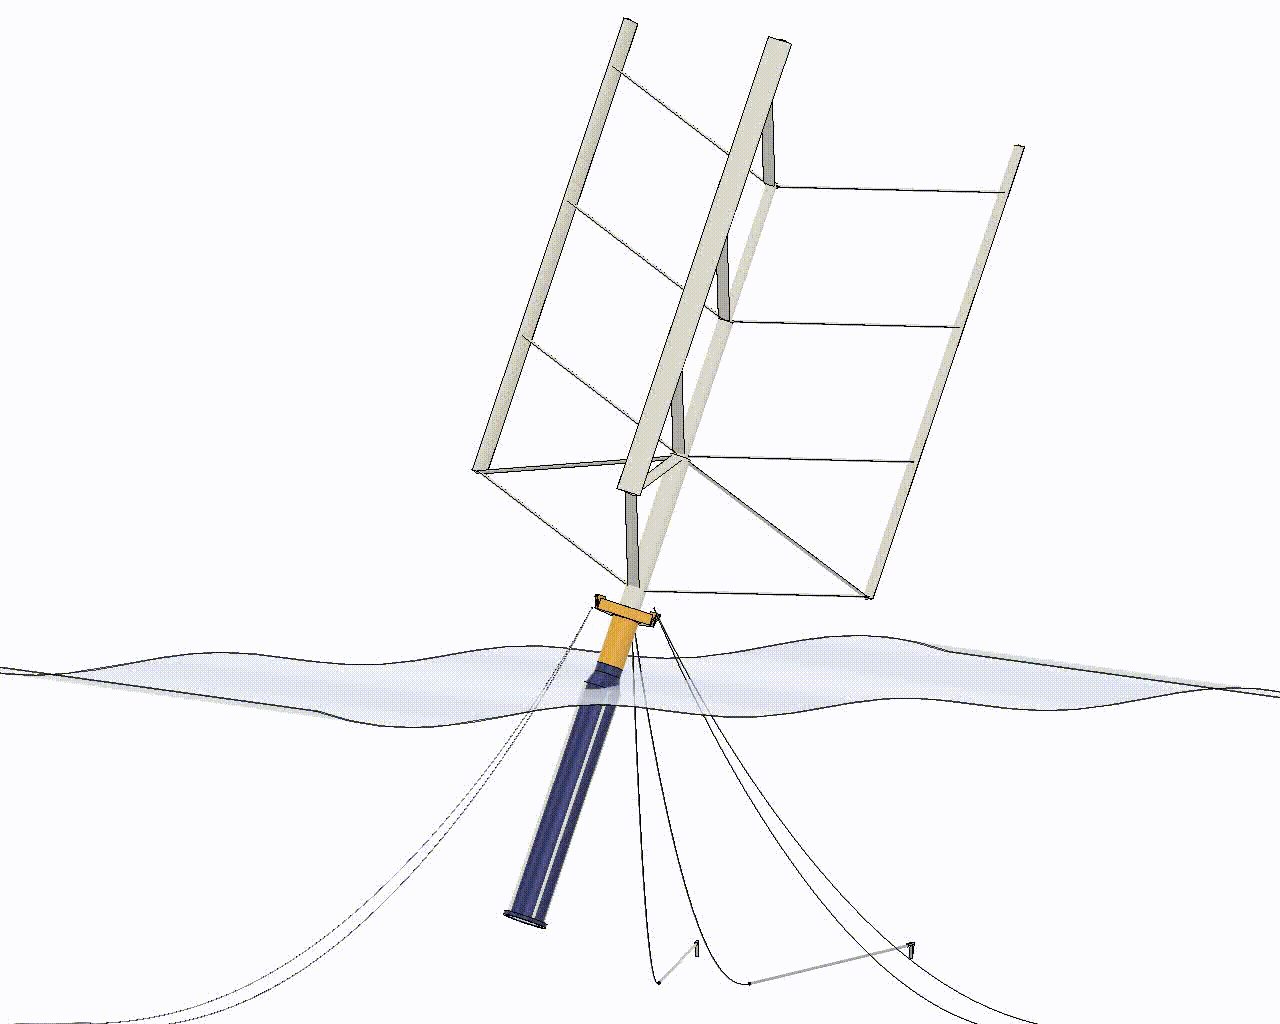 浮遊軸型風車(FAWT)は浮体も回転する